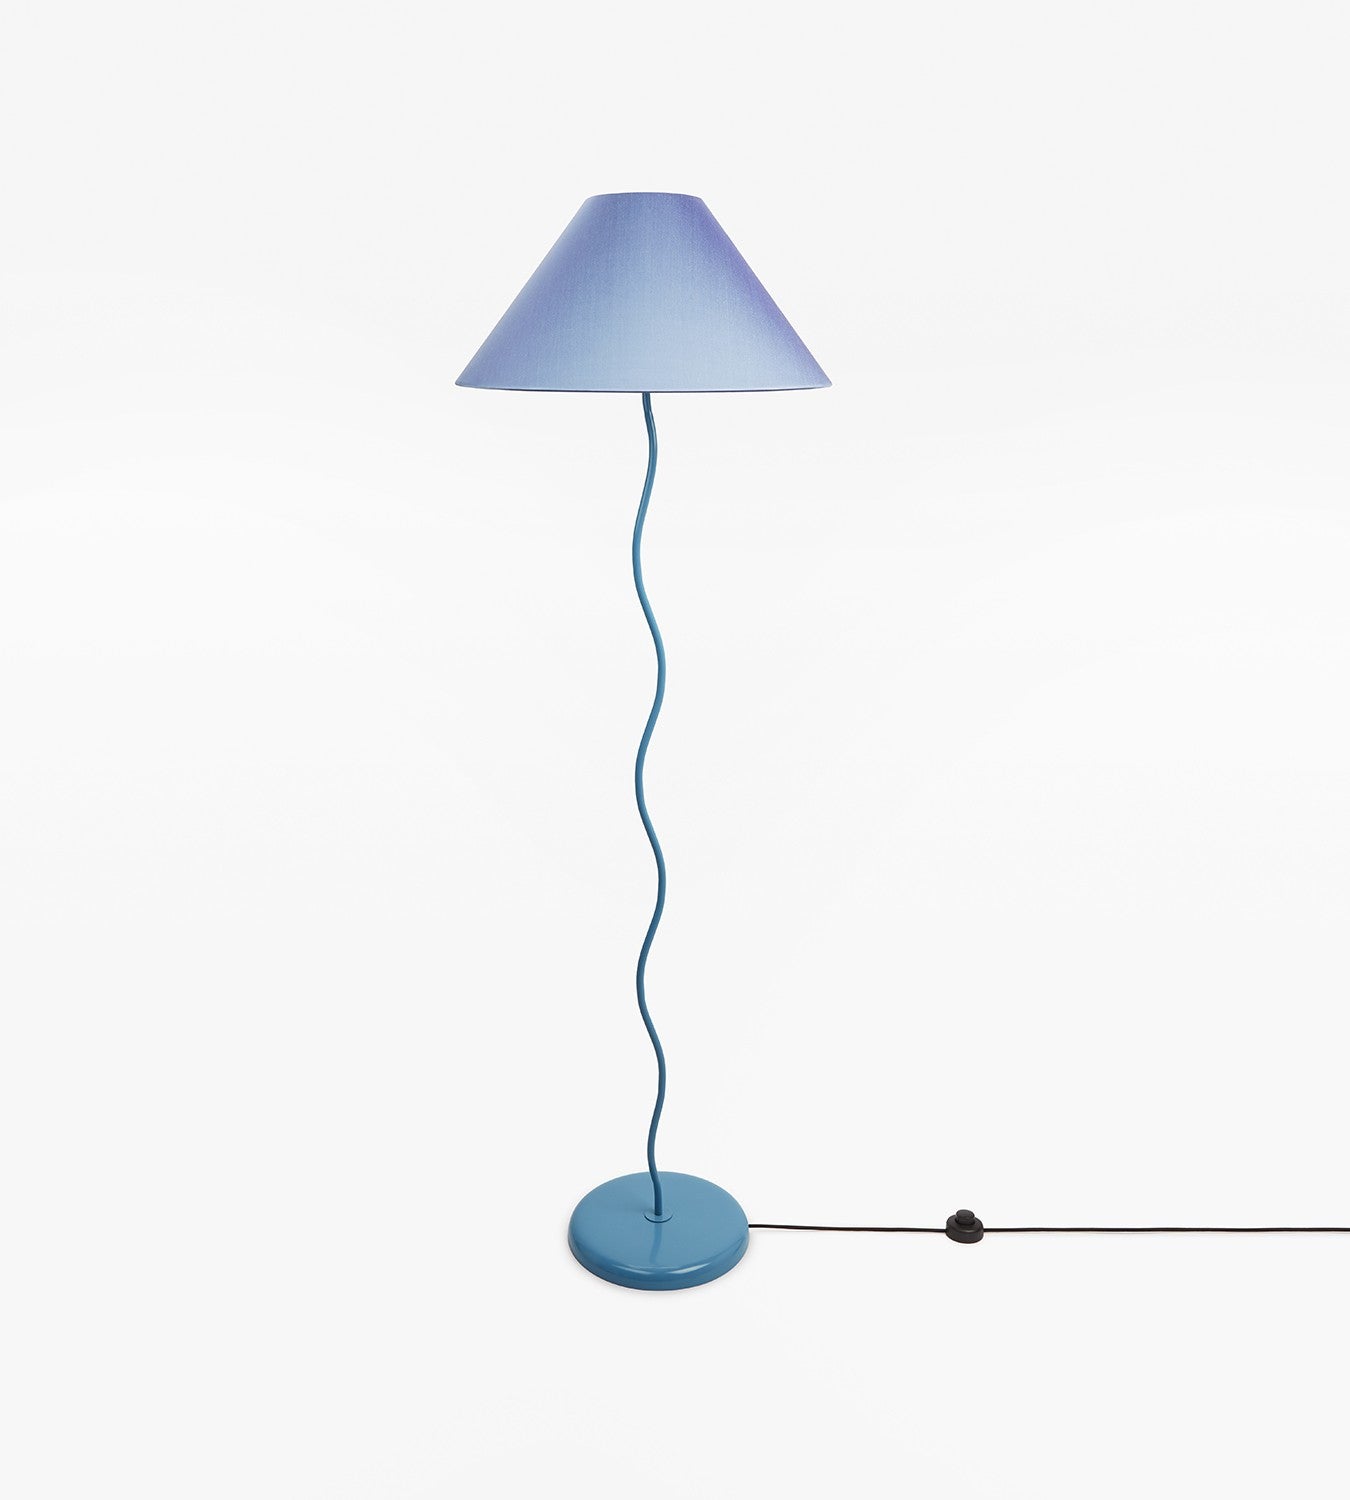 The Wiggle Floor Standing Lamp